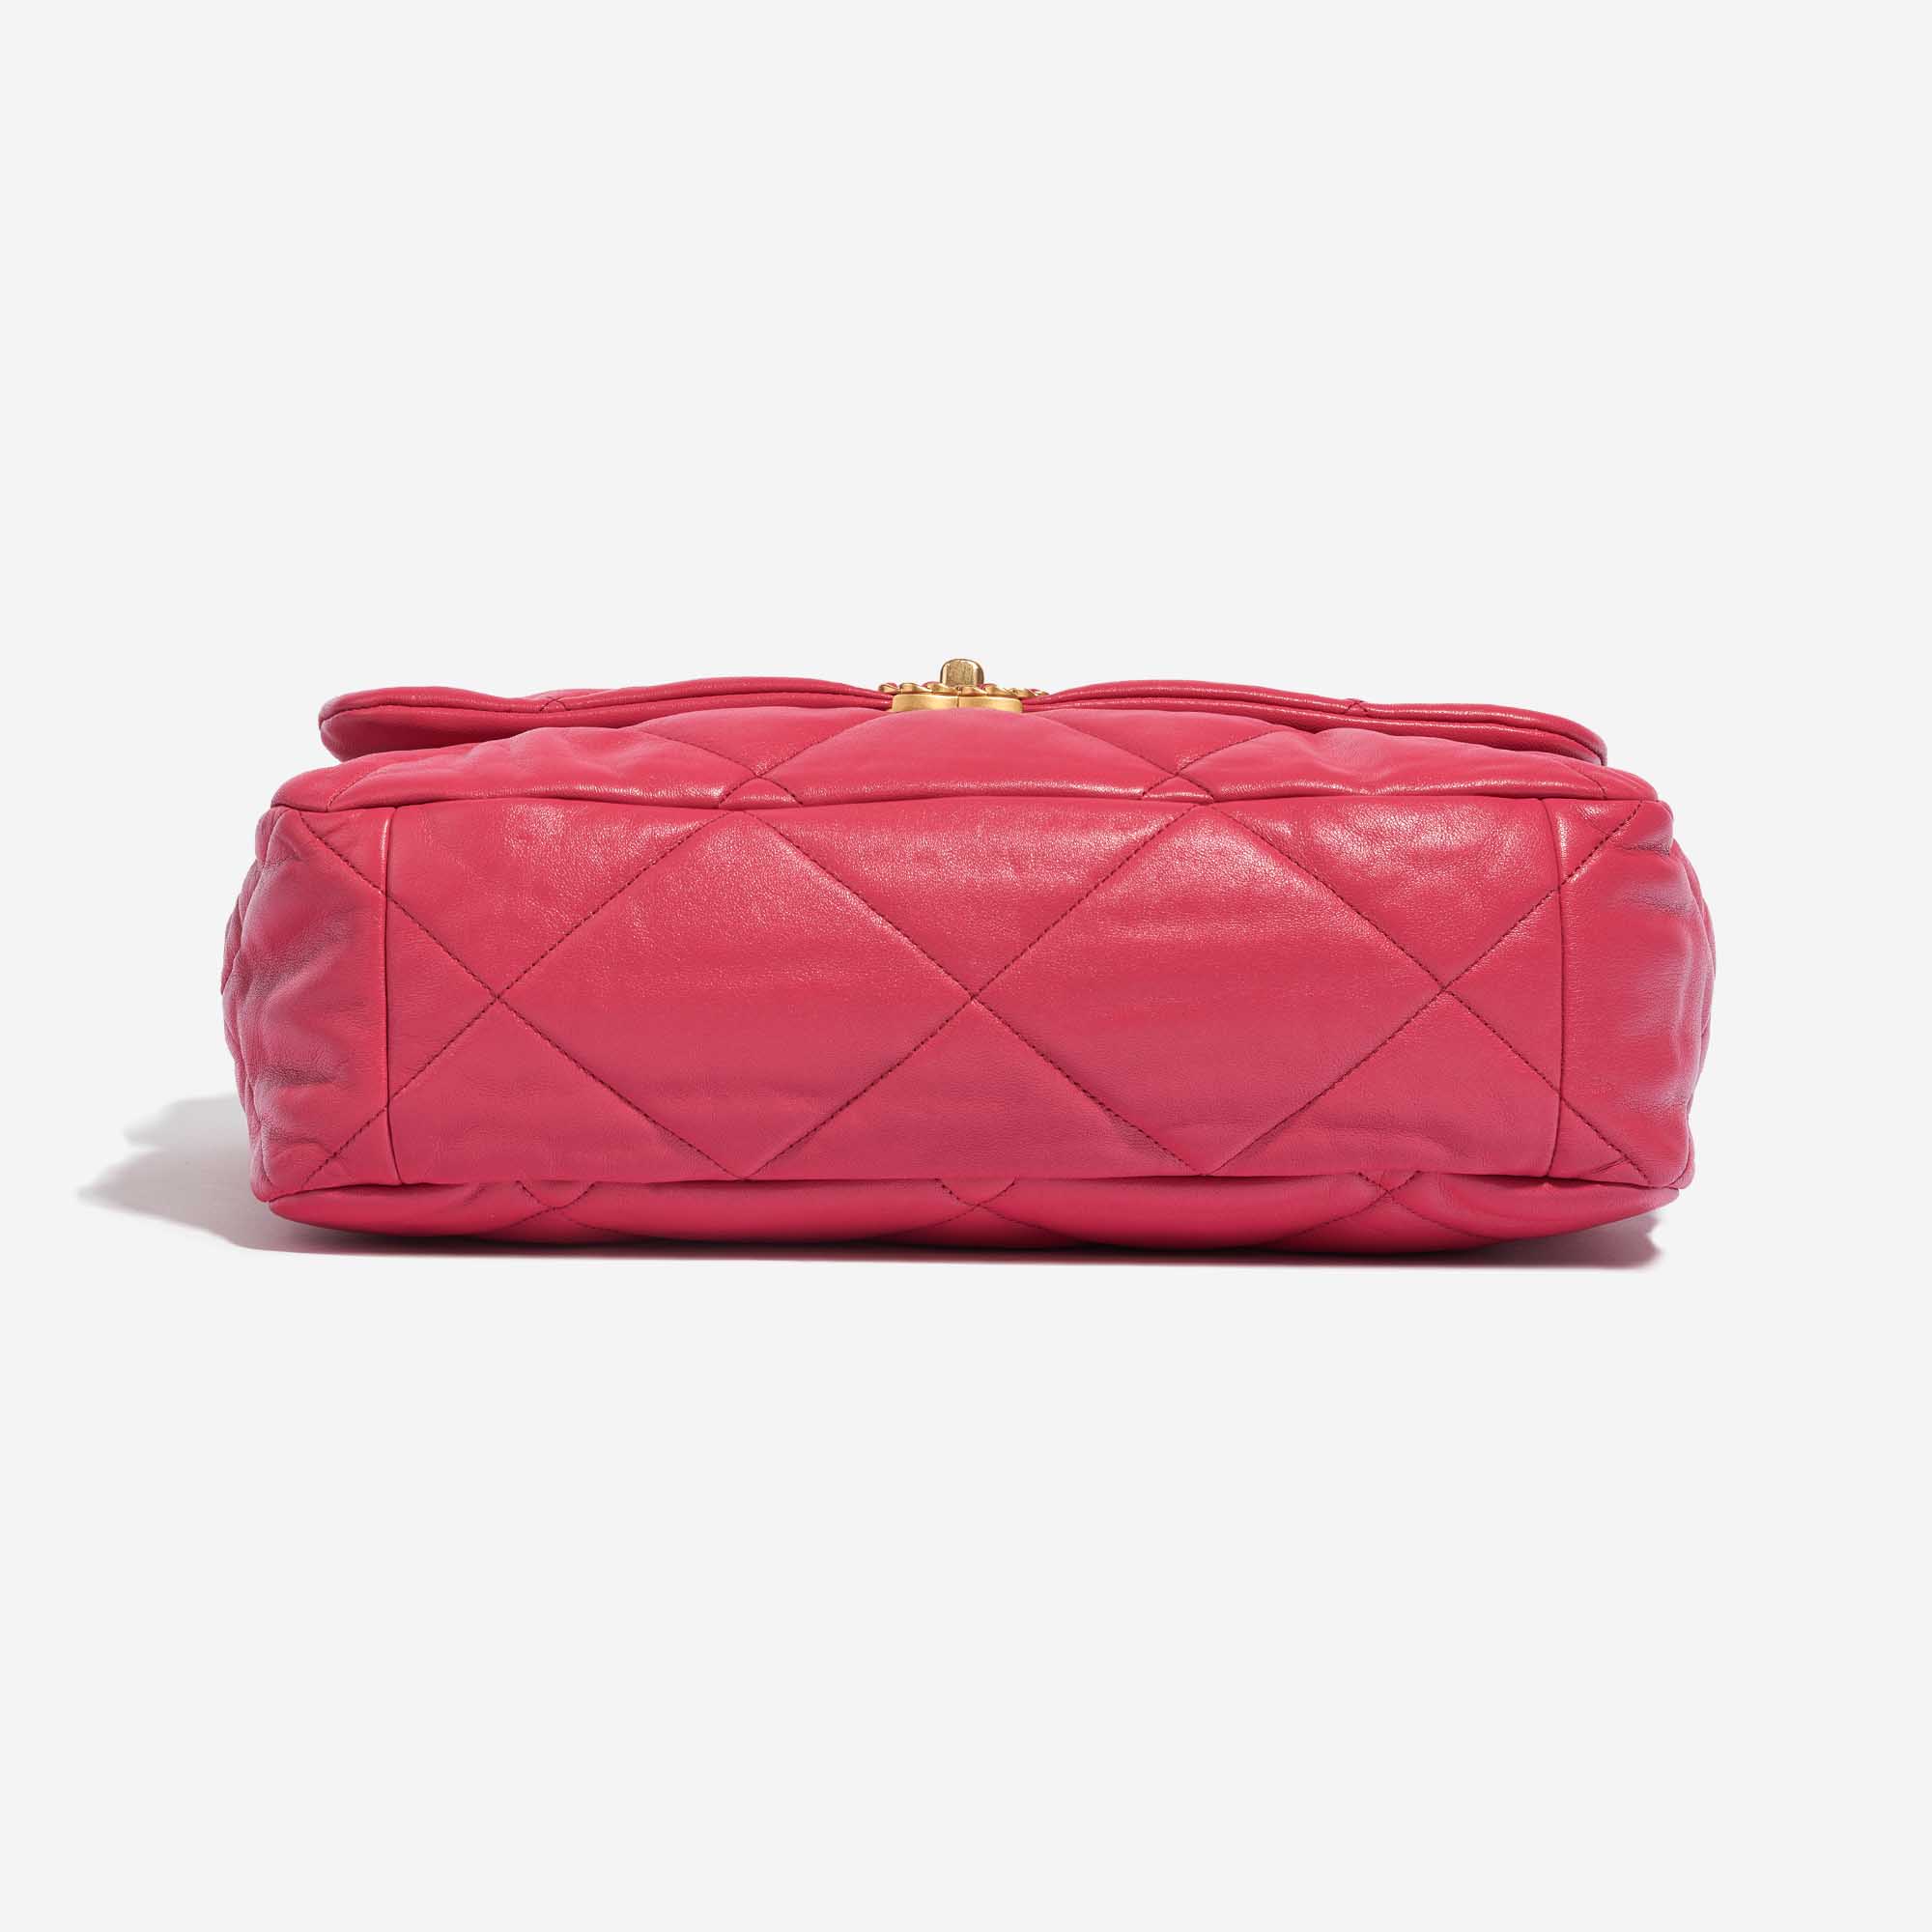 Pre-owned Chanel Tasche 19 Maxi Flap Bag Lammleder Pink Pink Bottom | Verkaufen Sie Ihre Designer-Tasche auf Saclab.com